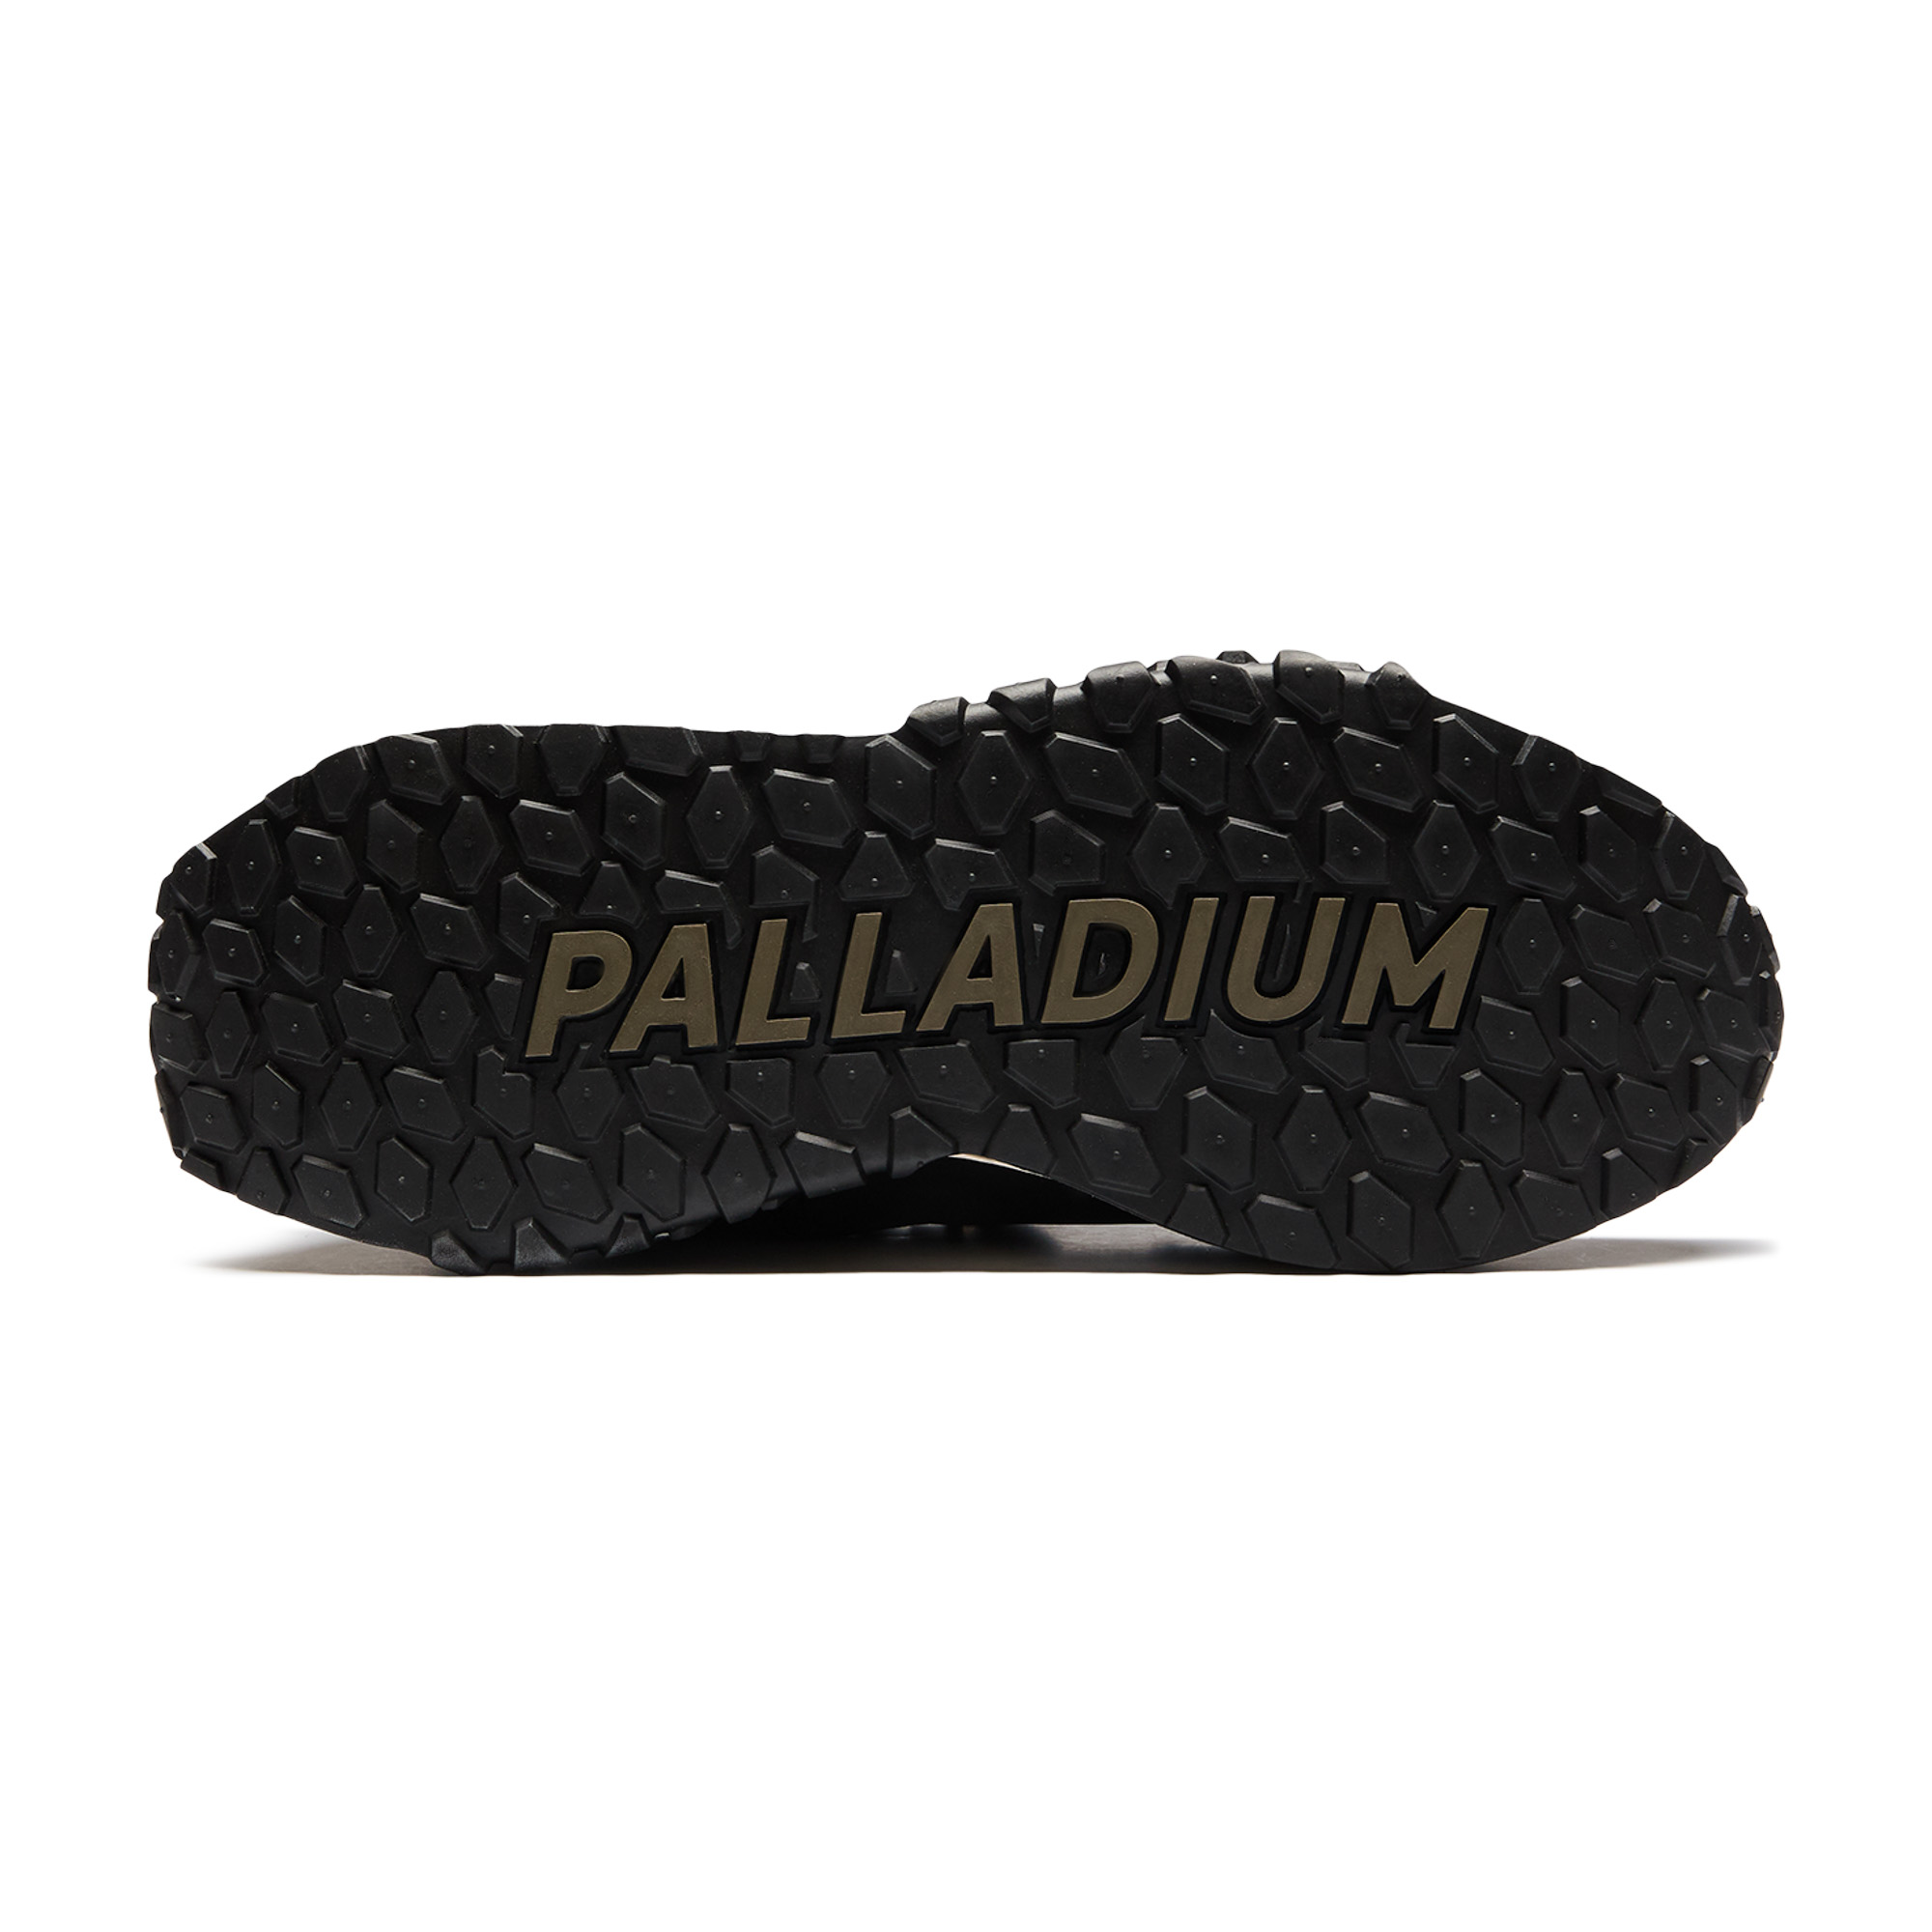 TROOP RUNNER PALLADIUM, размер 41, цвет черный PL77330 - фото 6